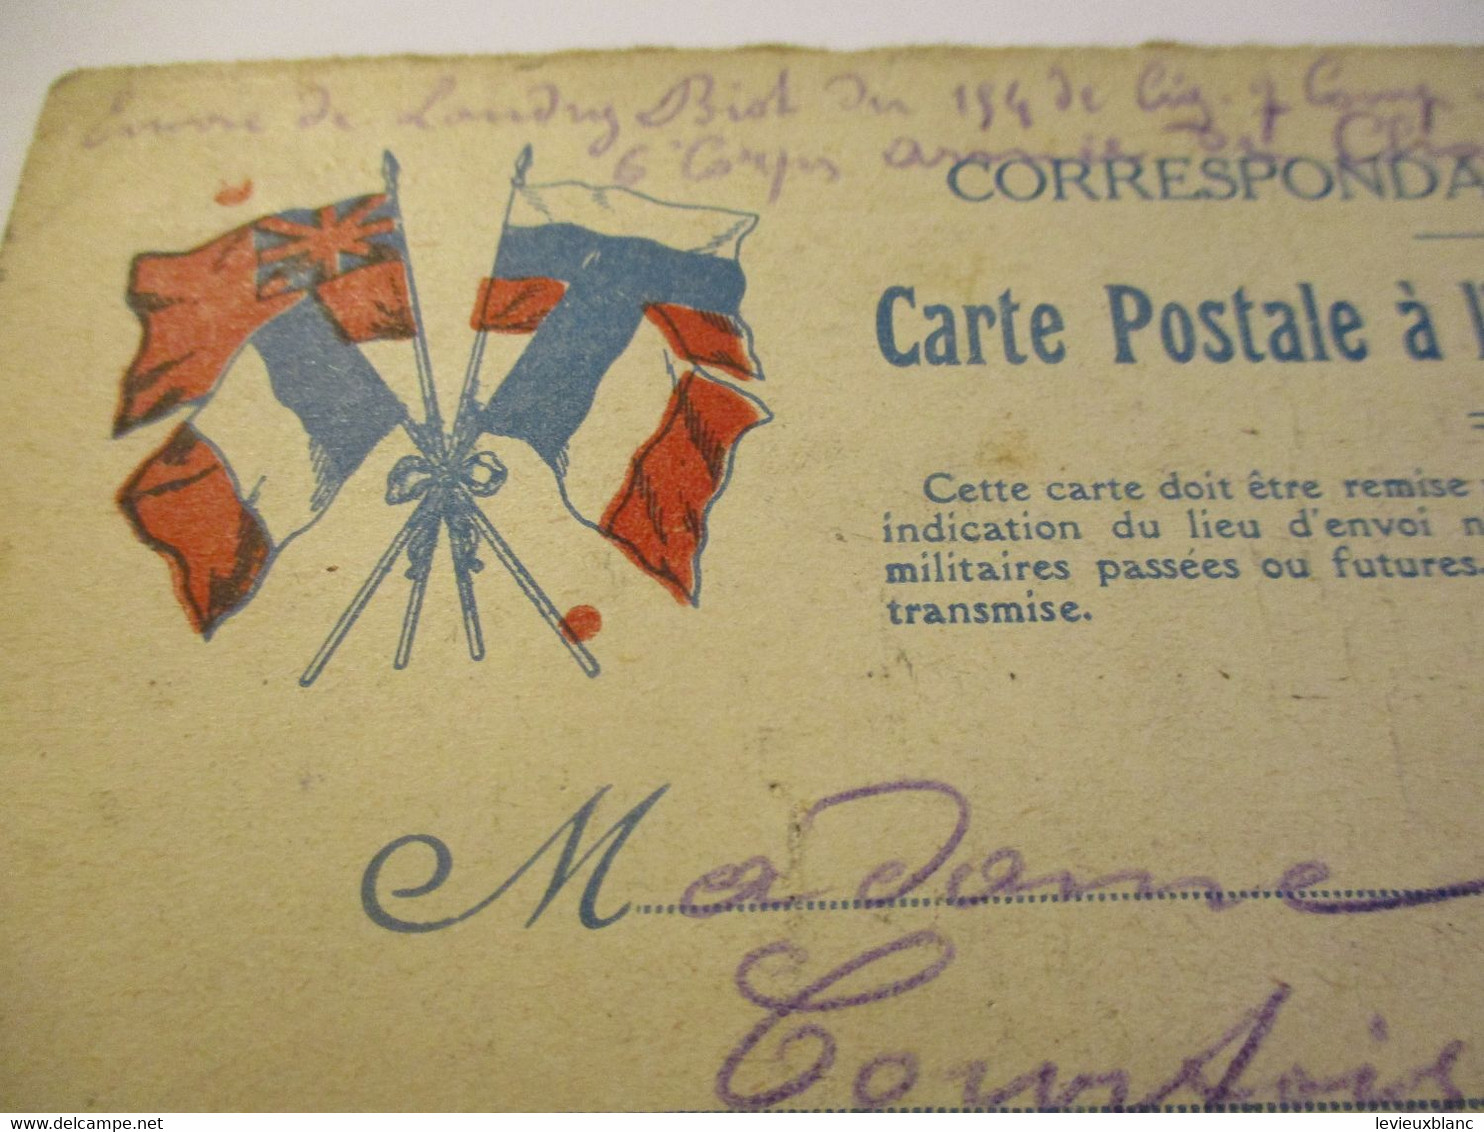 Correspondance Militaire/Carte Postale à L'usage Des Militaires/Landry BIOT à Mme Courtois/1914             POIL215 - 1914-18